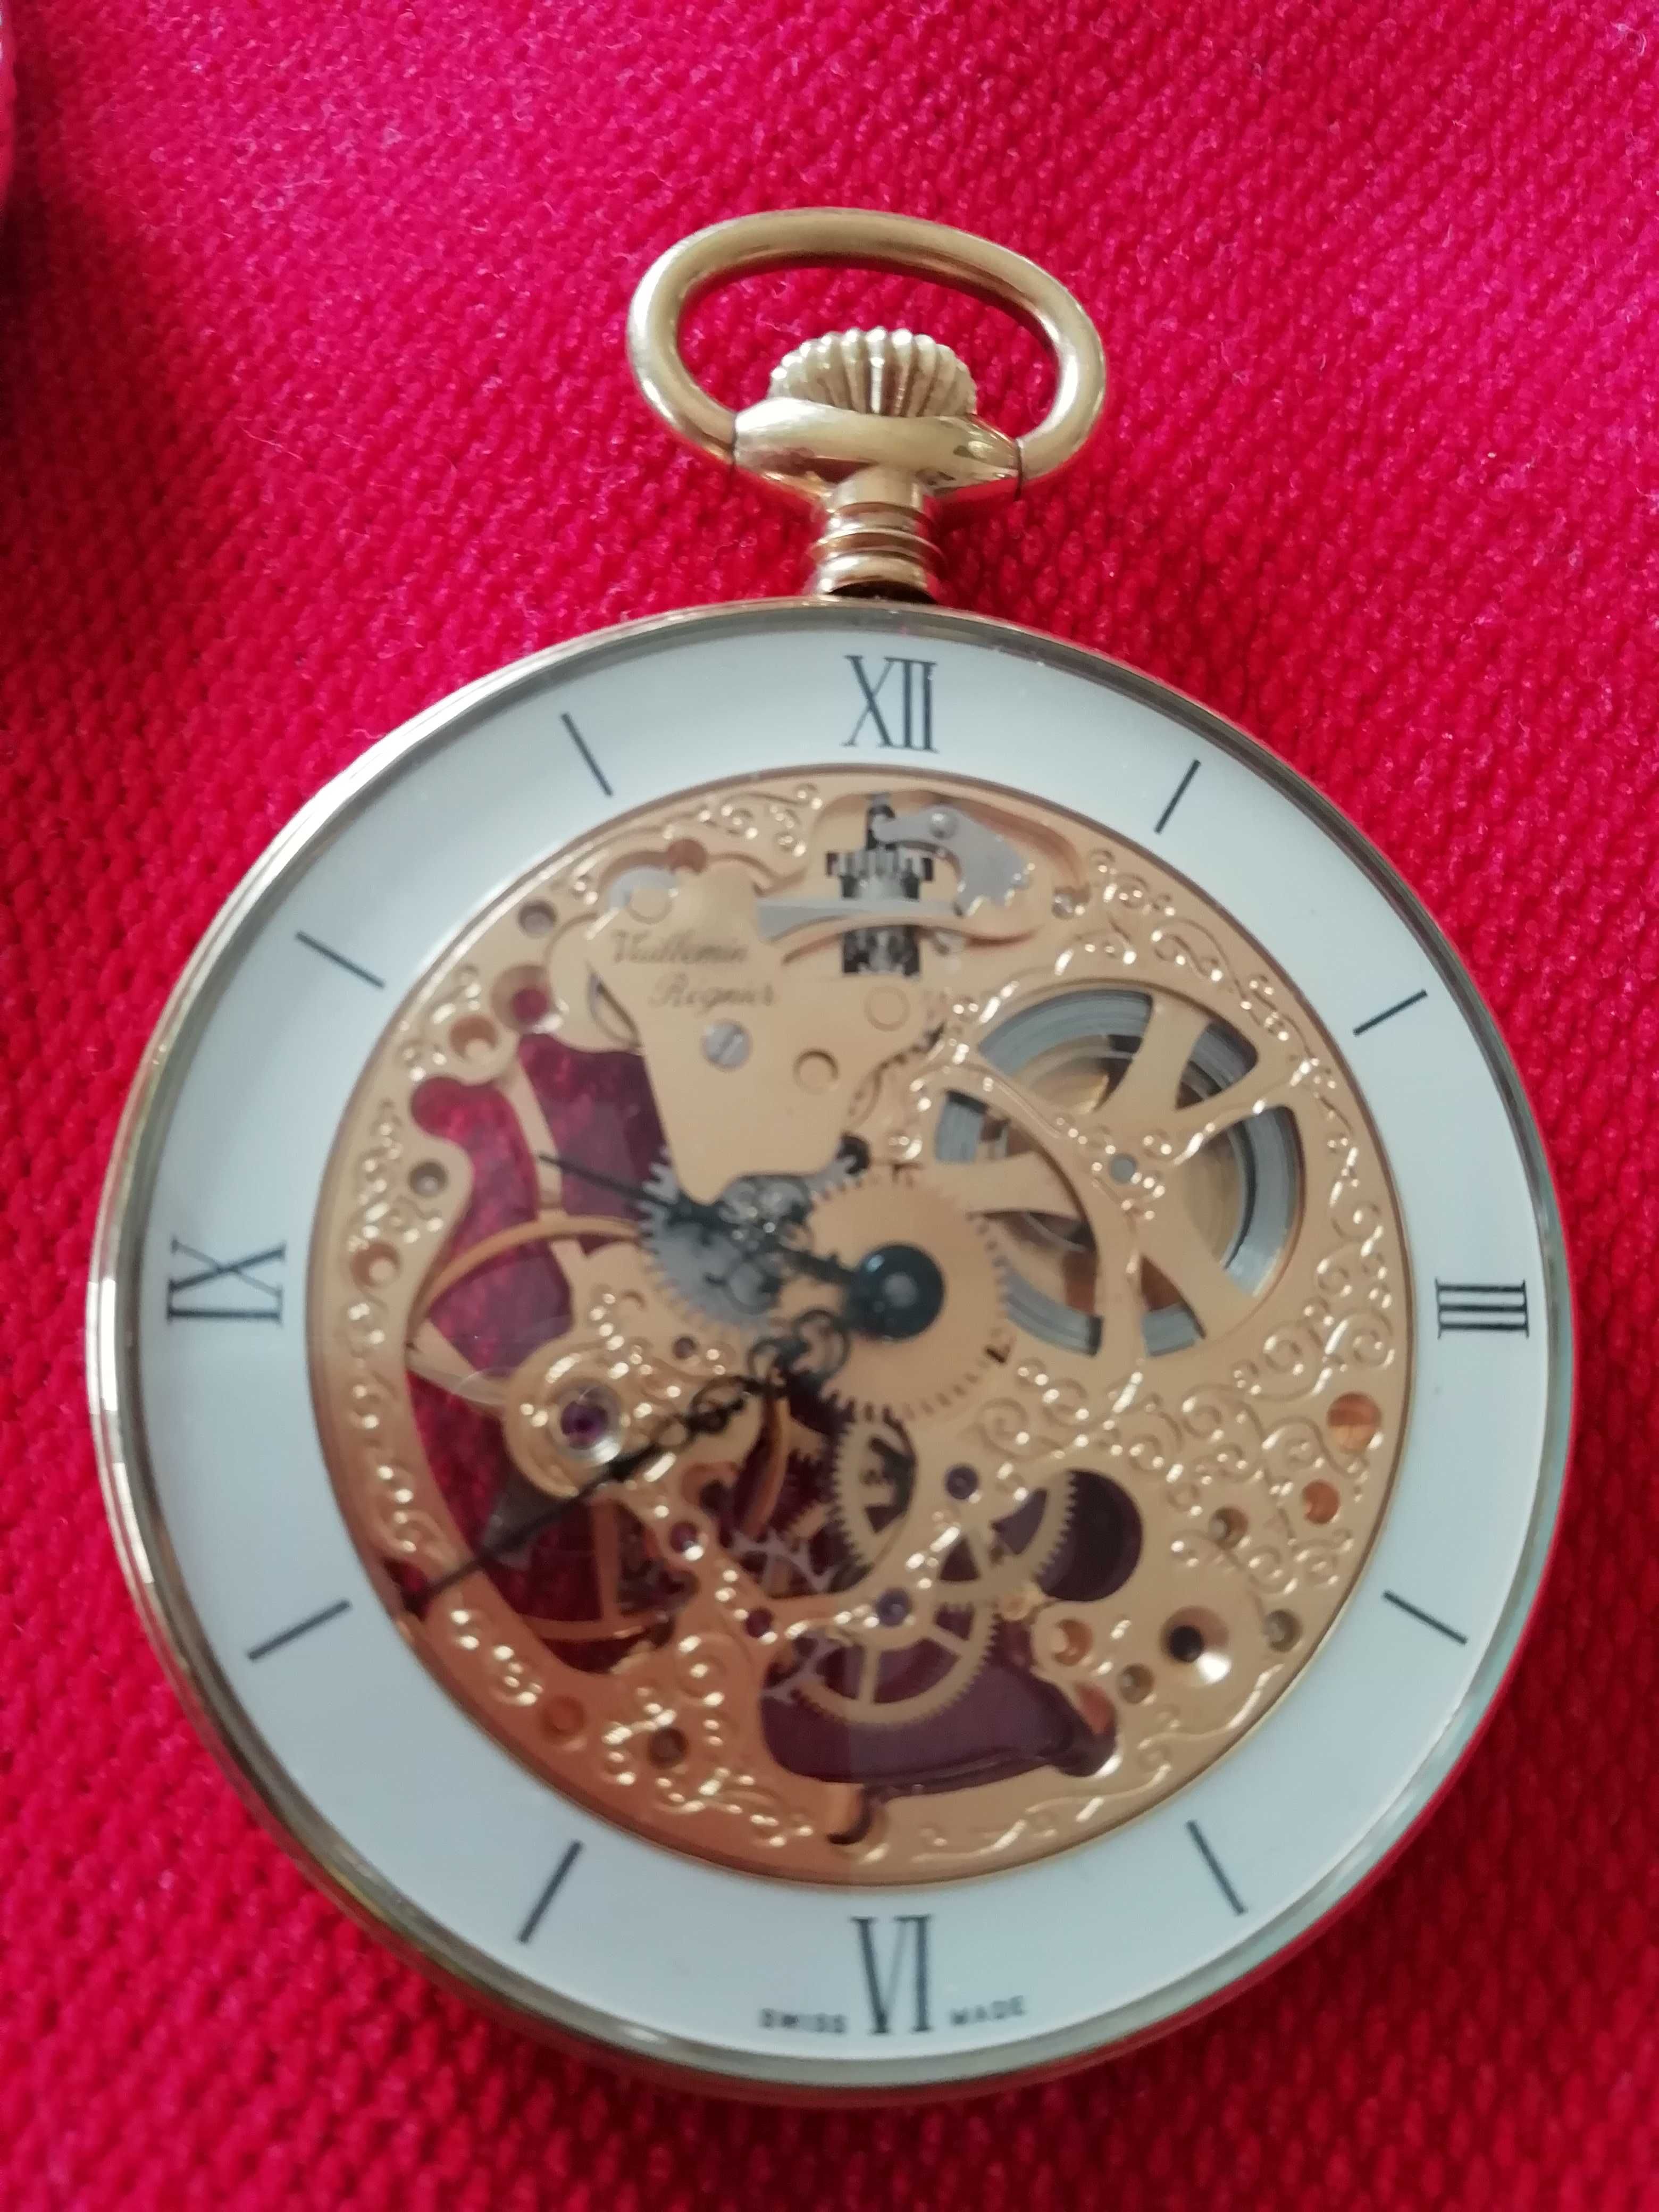 Vuillemin Régnier - Swiss Made - Relógio de bolso